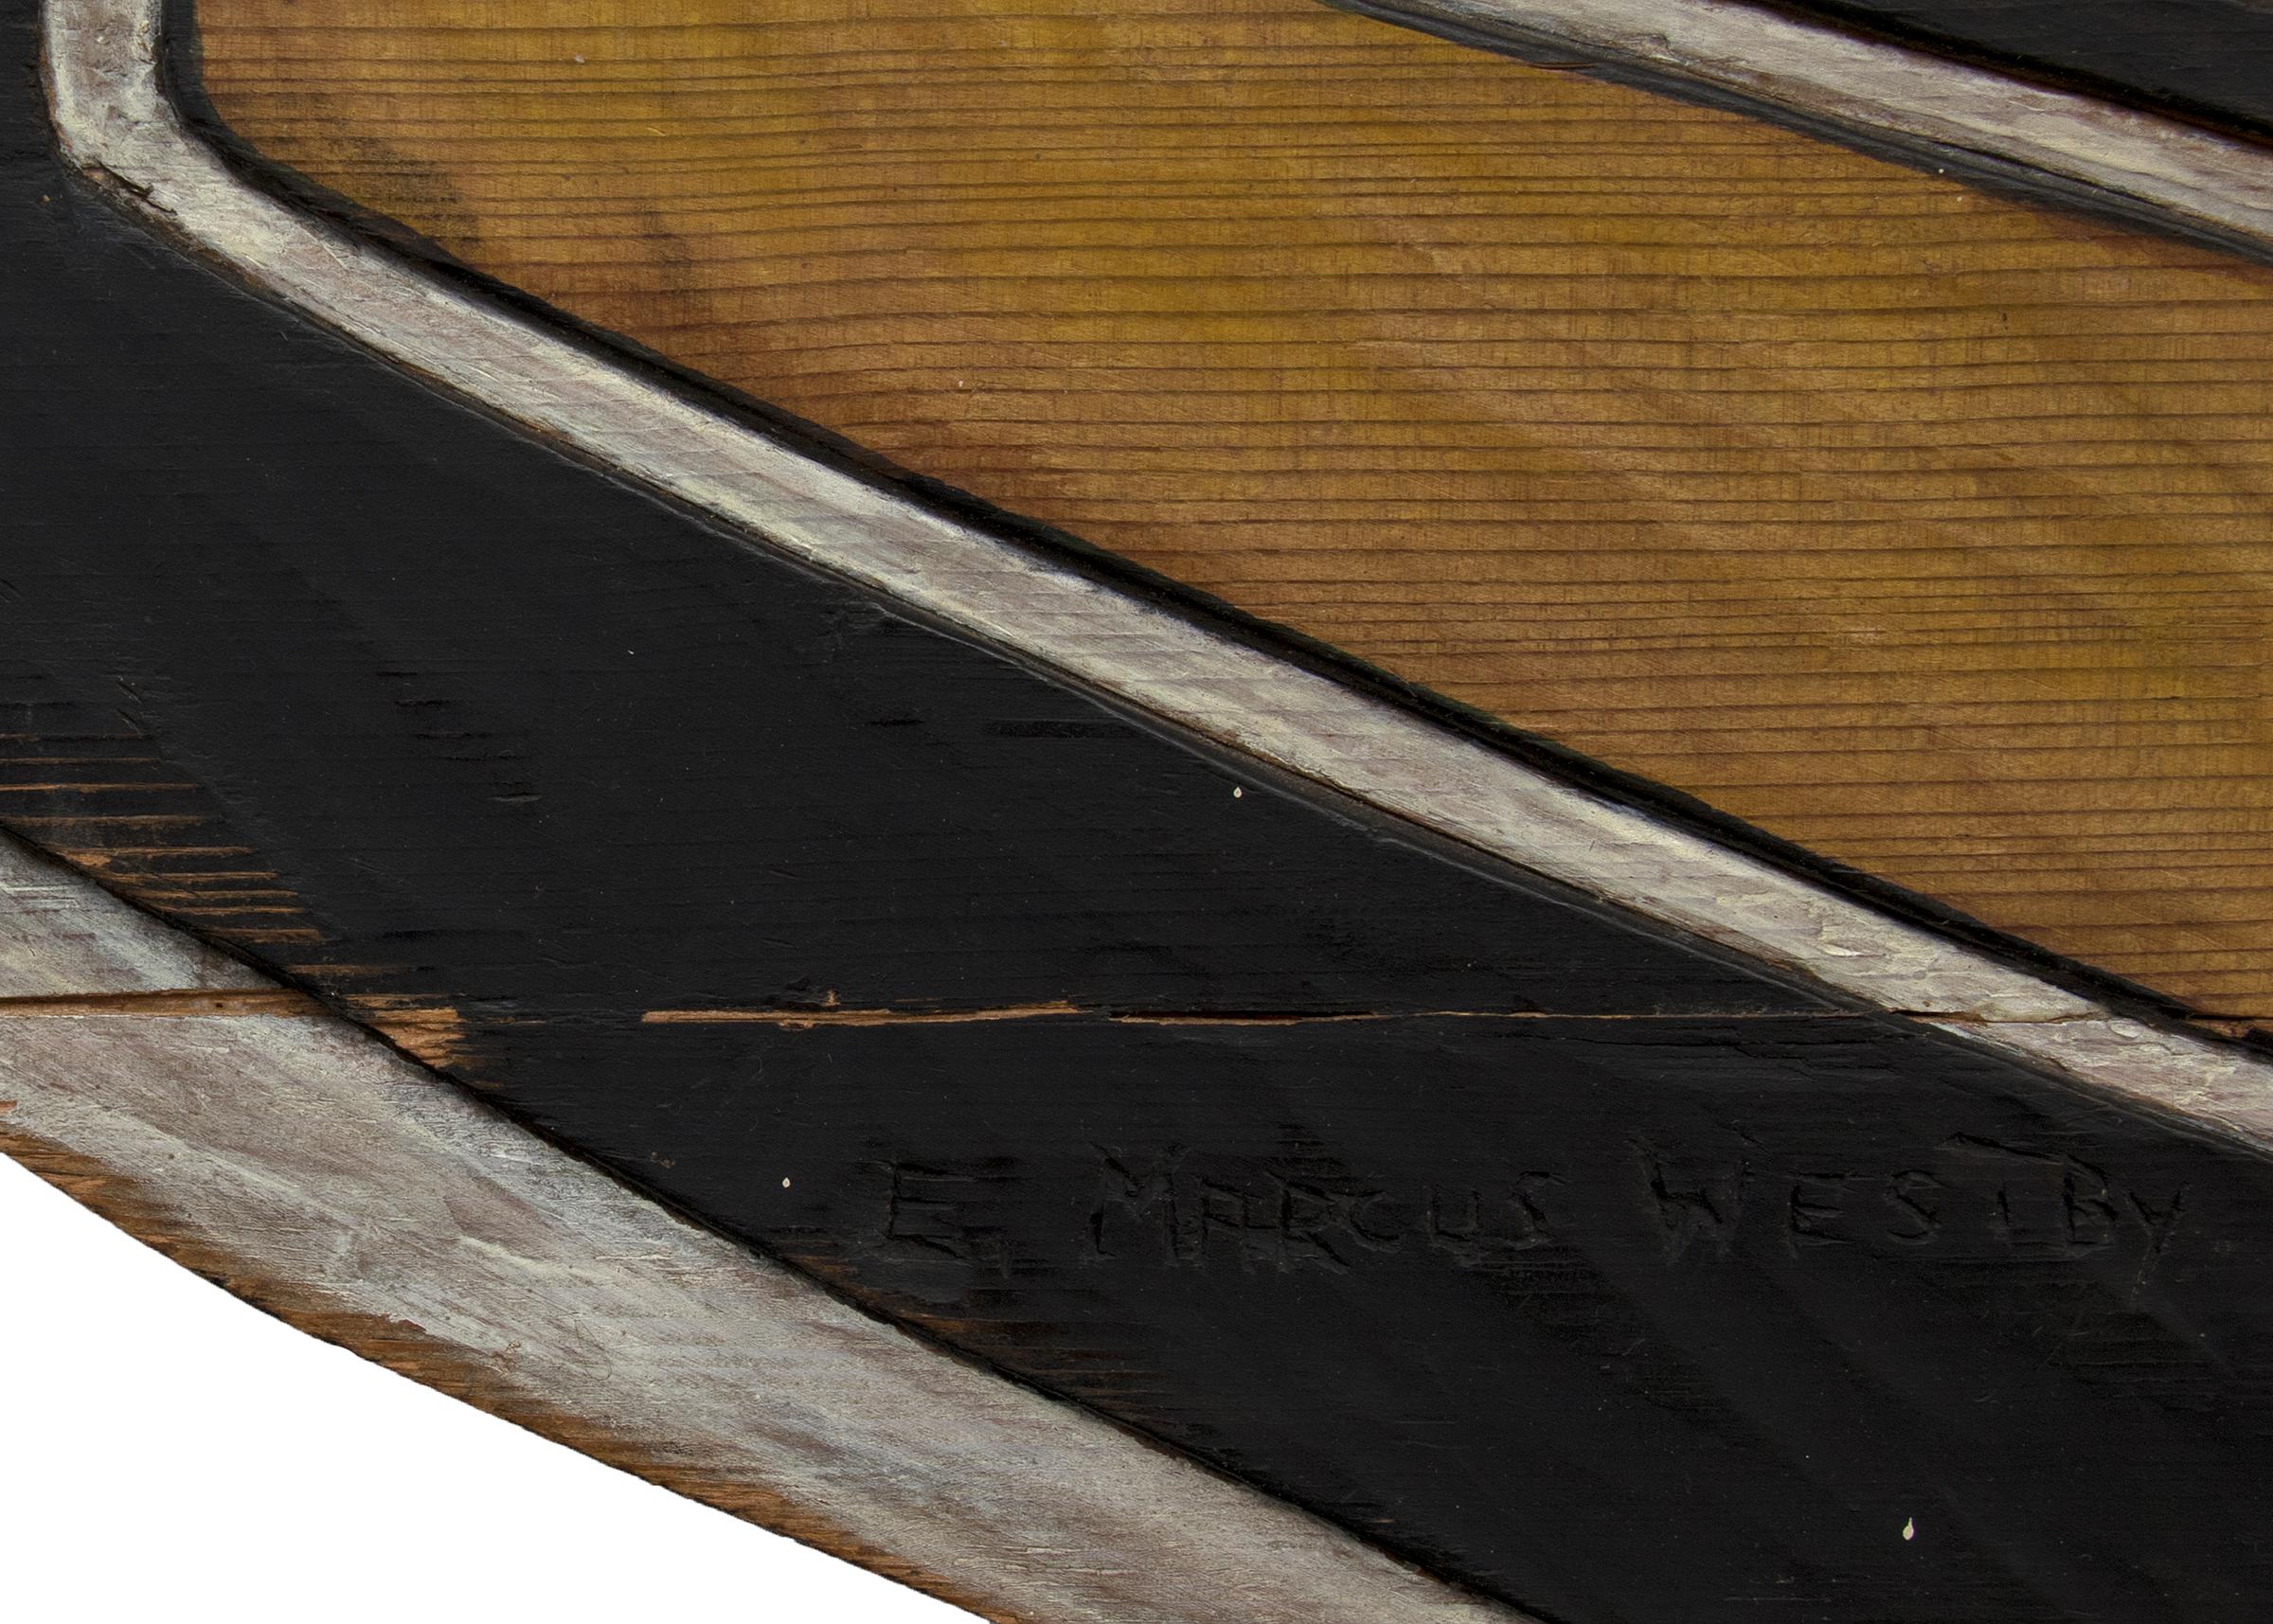 Panneau de chilkat en bois sculpté et peint, fabriqué au milieu du 20e siècle par E. Marcus Westby (1924-2010). 20e siècle par E. Marcus Westby (1924-2010). Présenté prêt à être accroché, les dimensions mesurent 31 ¾ x 66 ¼ x ¾ pouces.

La pièce